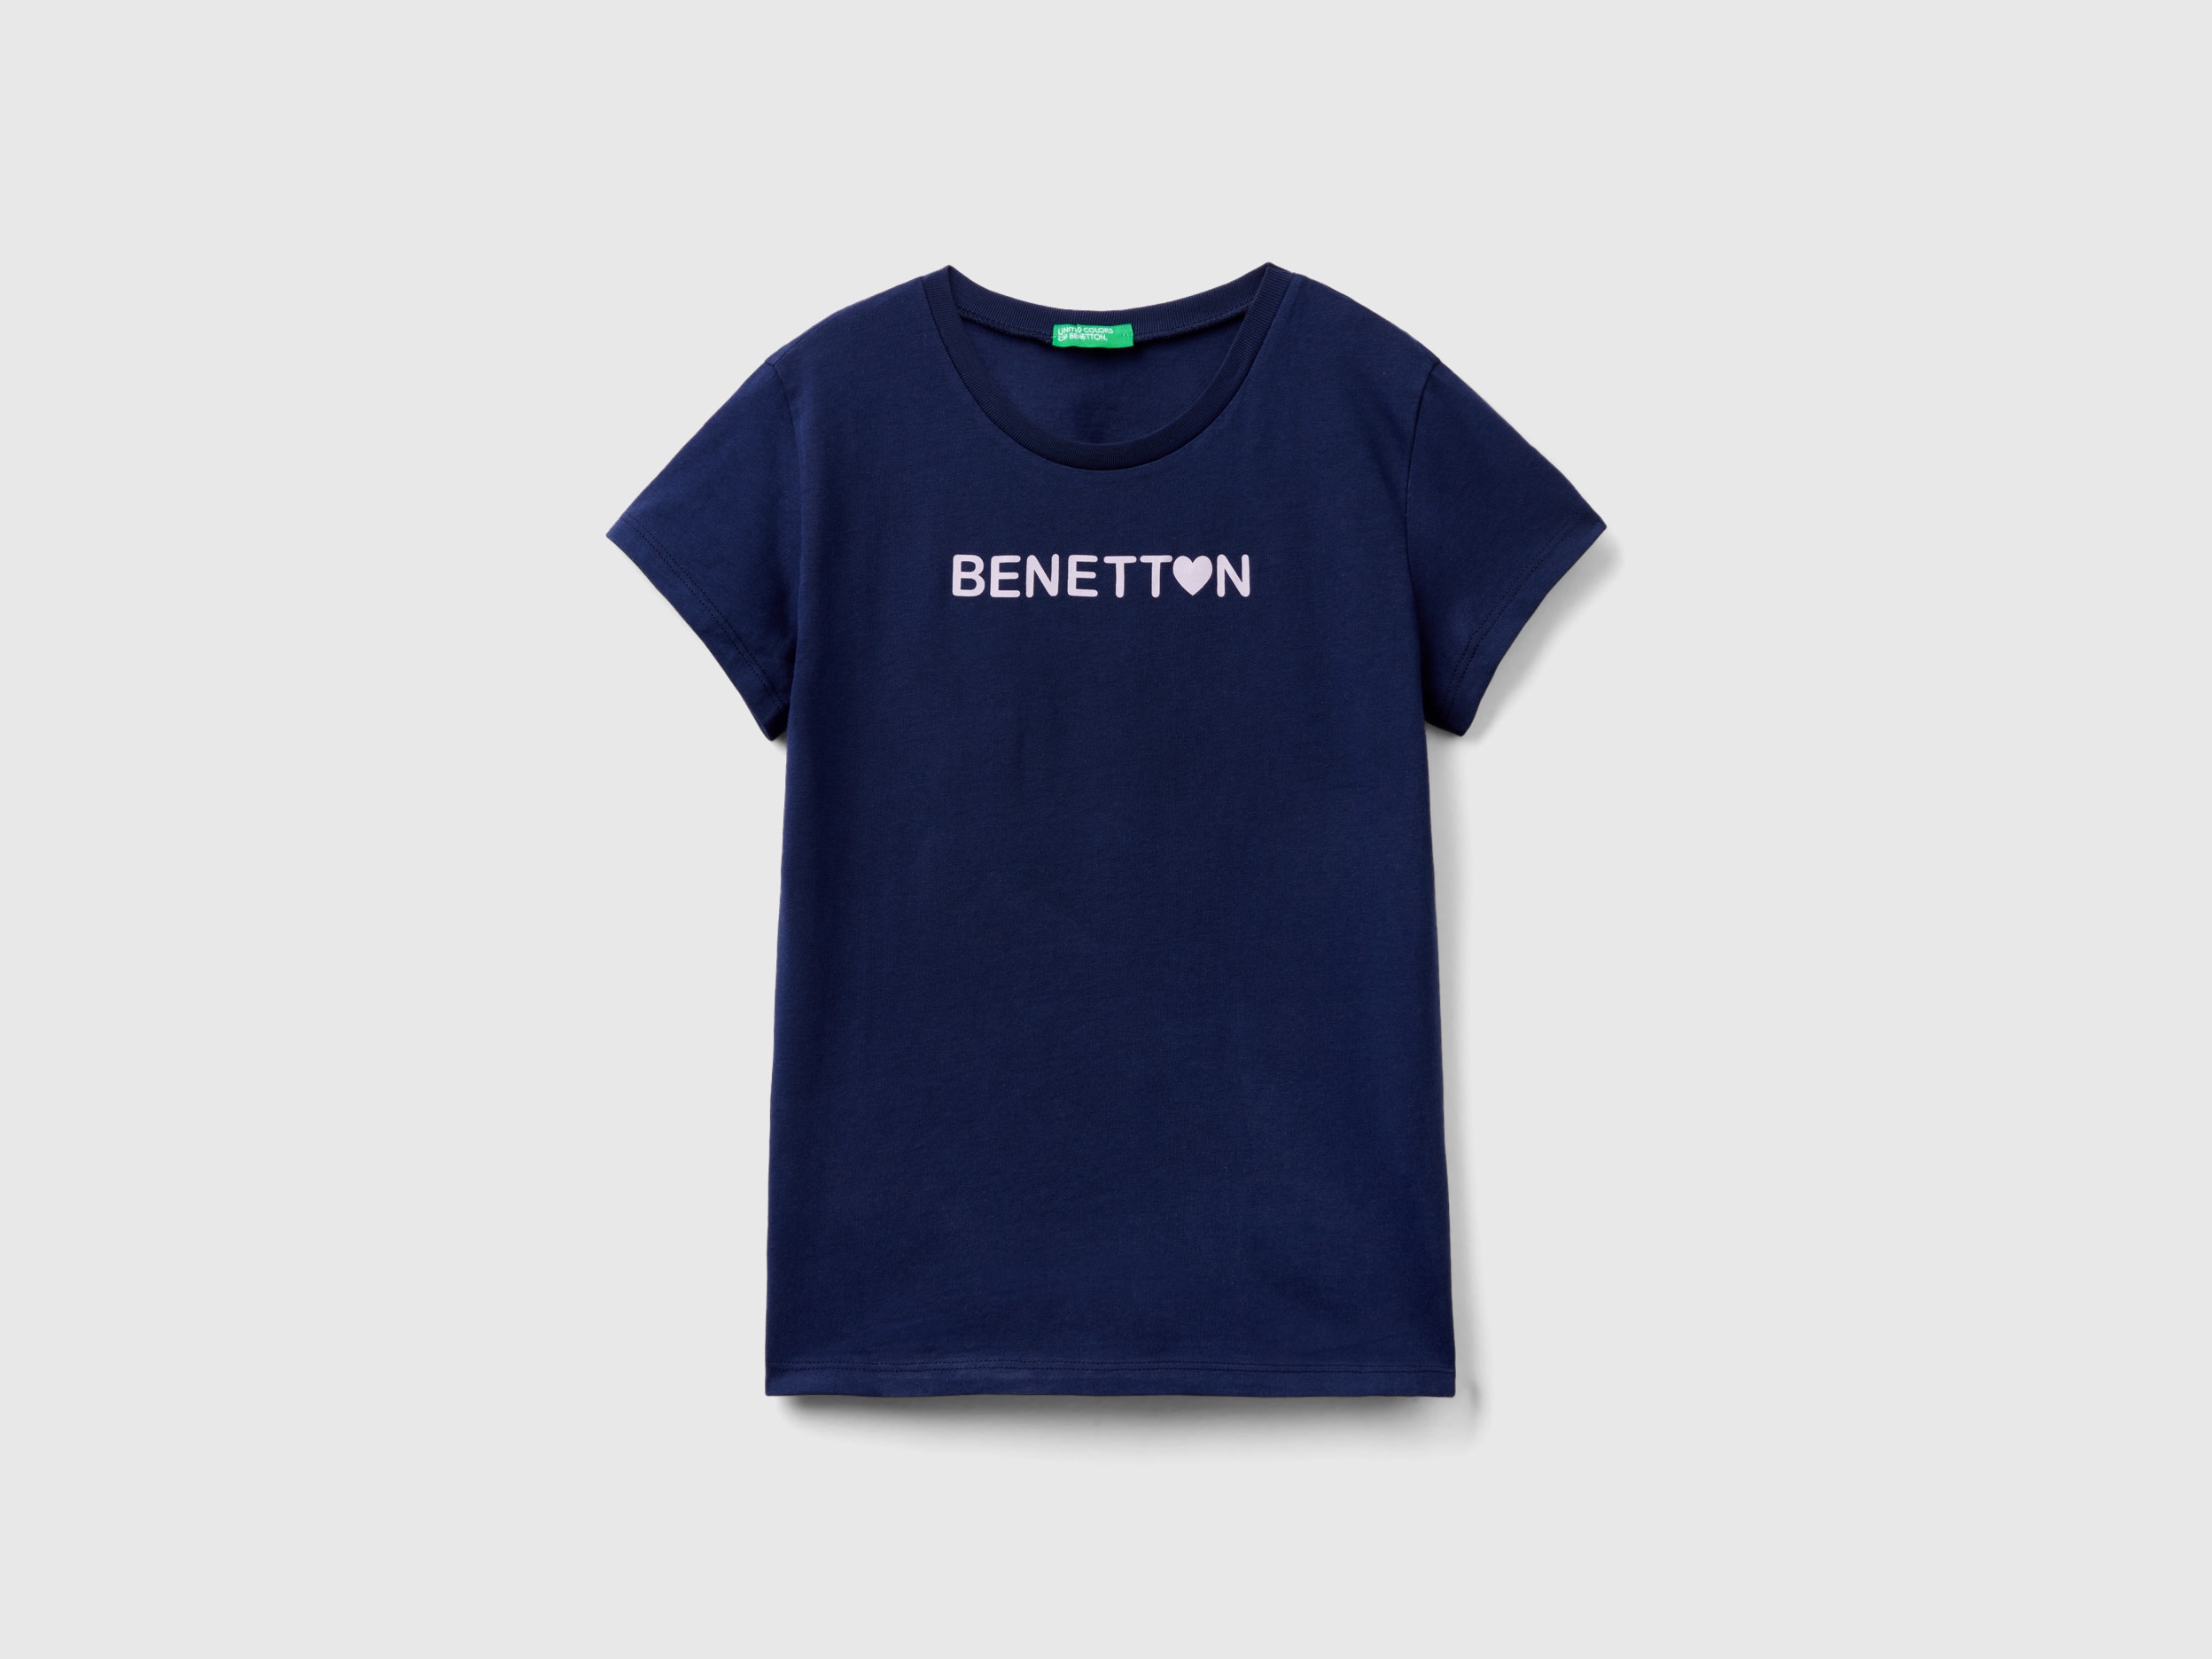 Benetton, 100% Cotton T-shirt With Logo, size S, Dark Blue, Kids